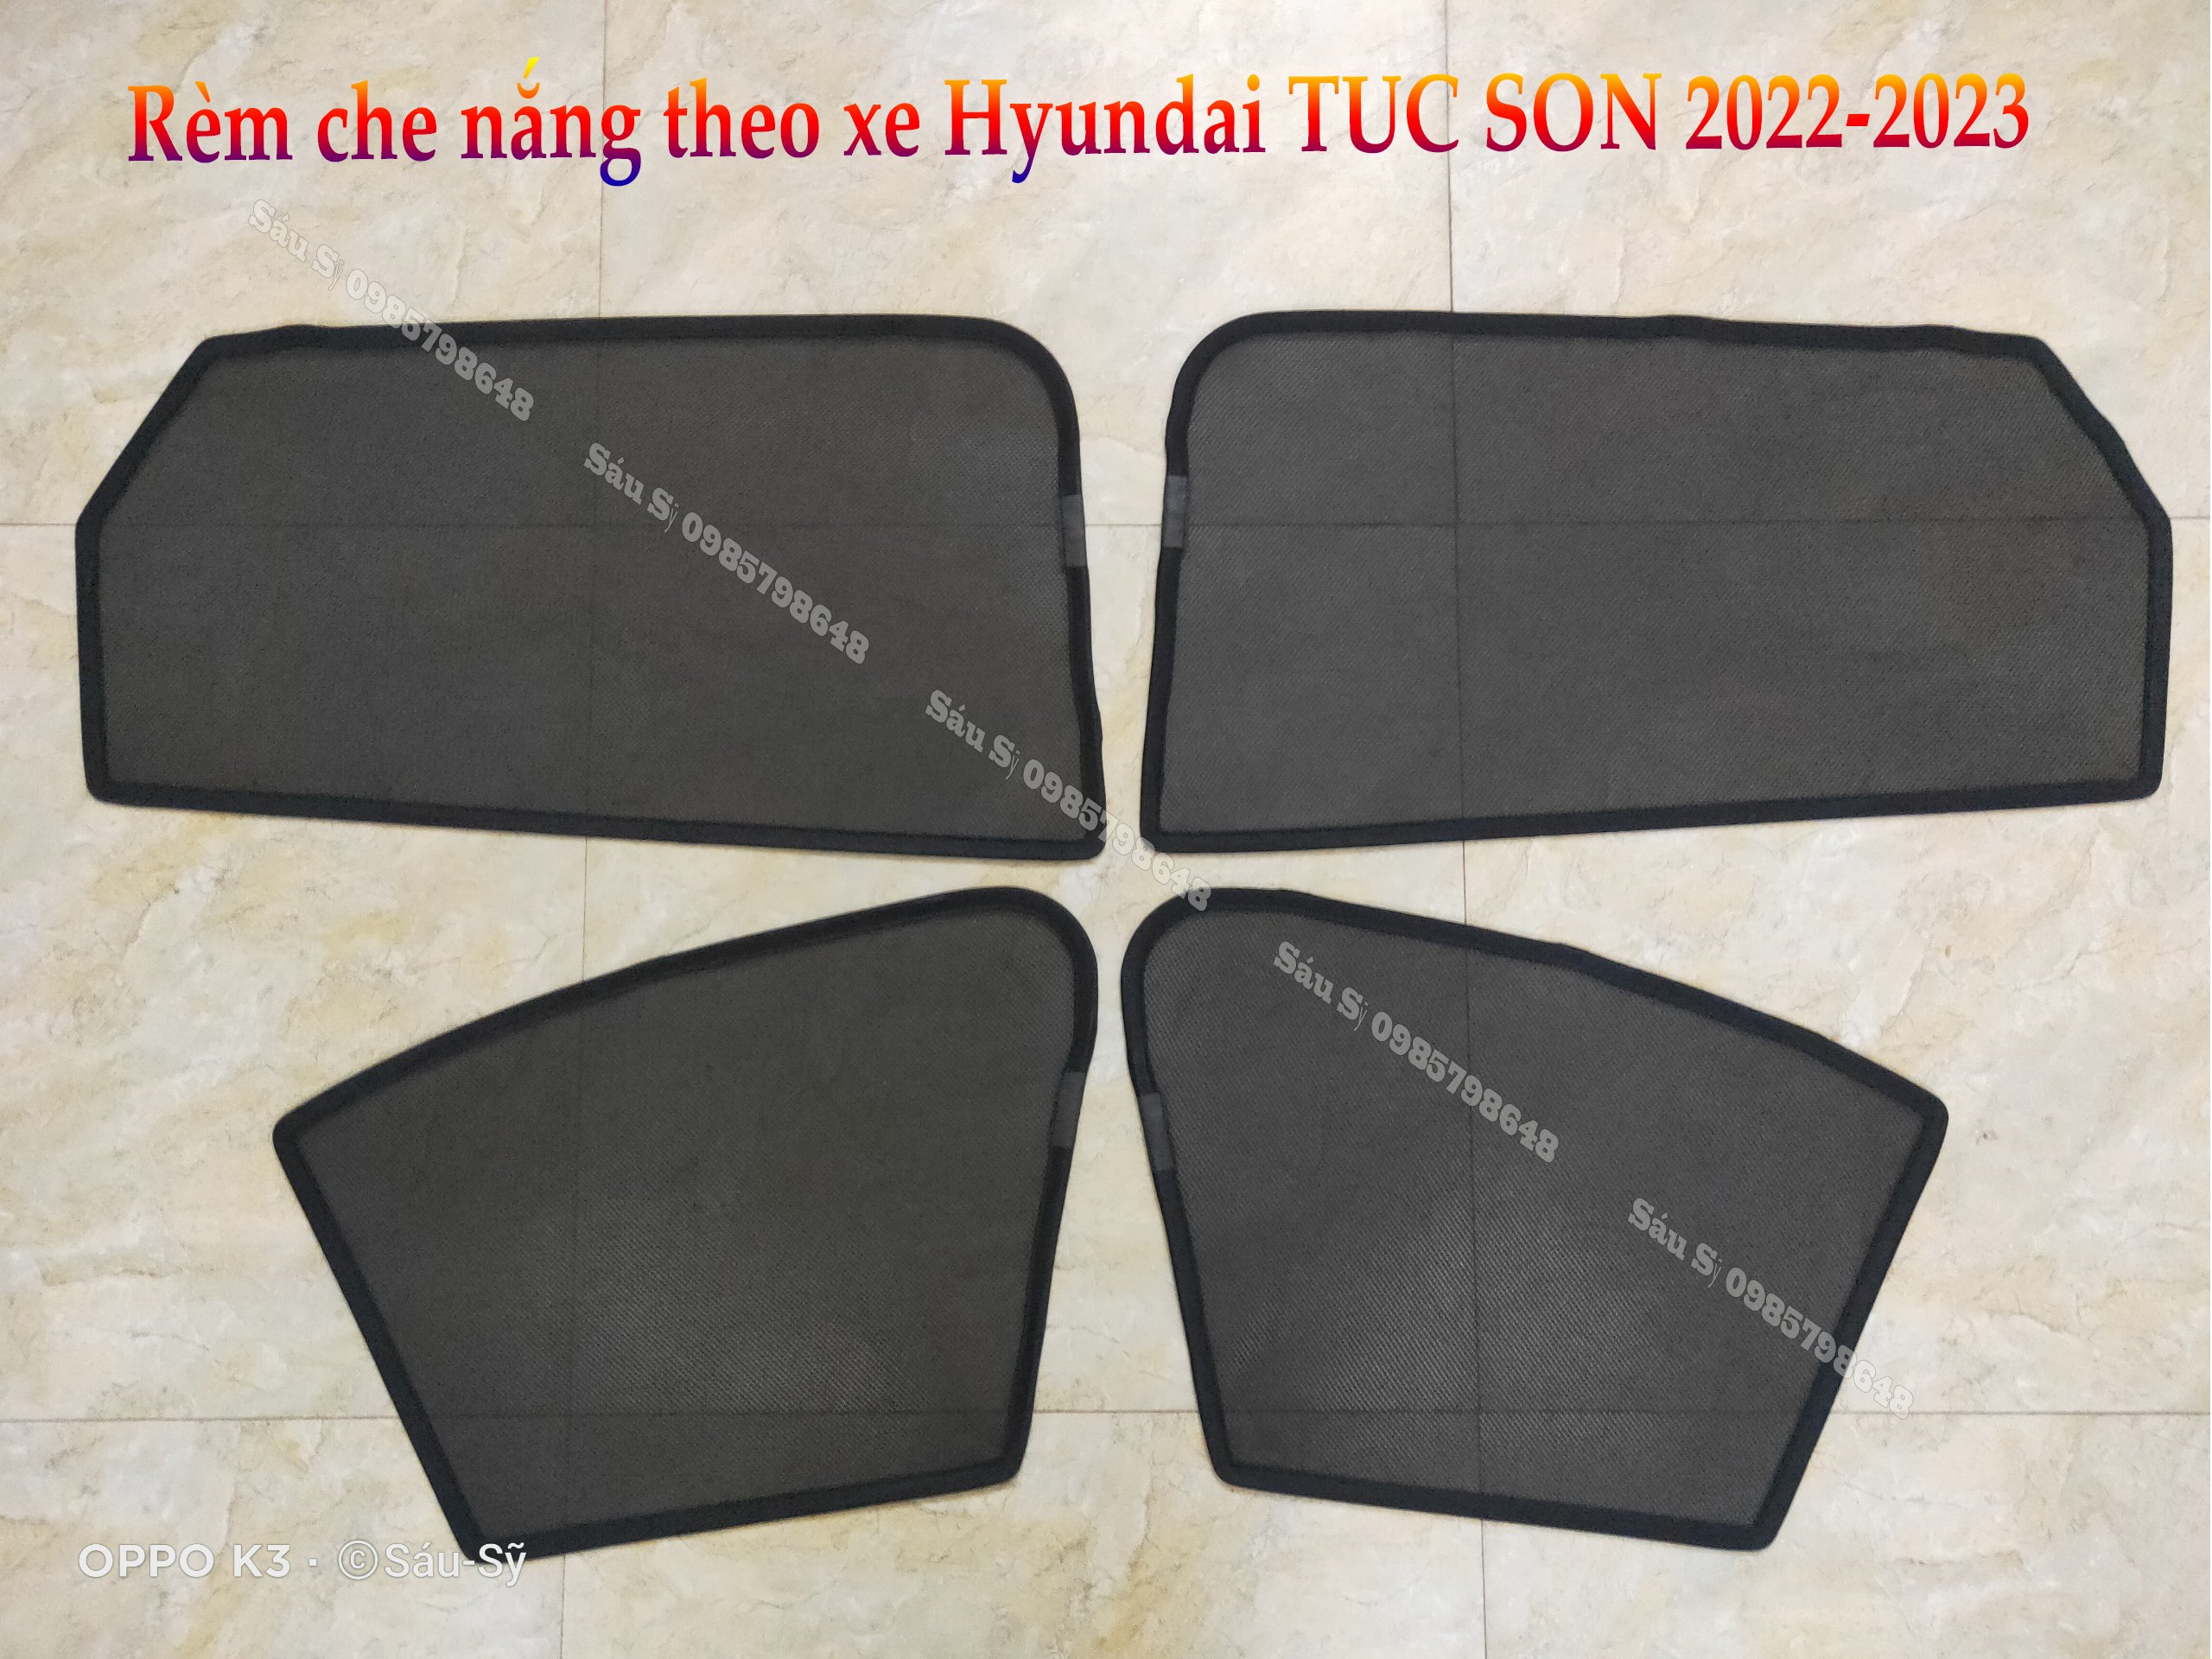 Bộ 4 tấm Rèm che nắng theo xe ô tô Hyundai TUCSON 2022-2023, Tấm che nắng ô tô nam châm tự dính